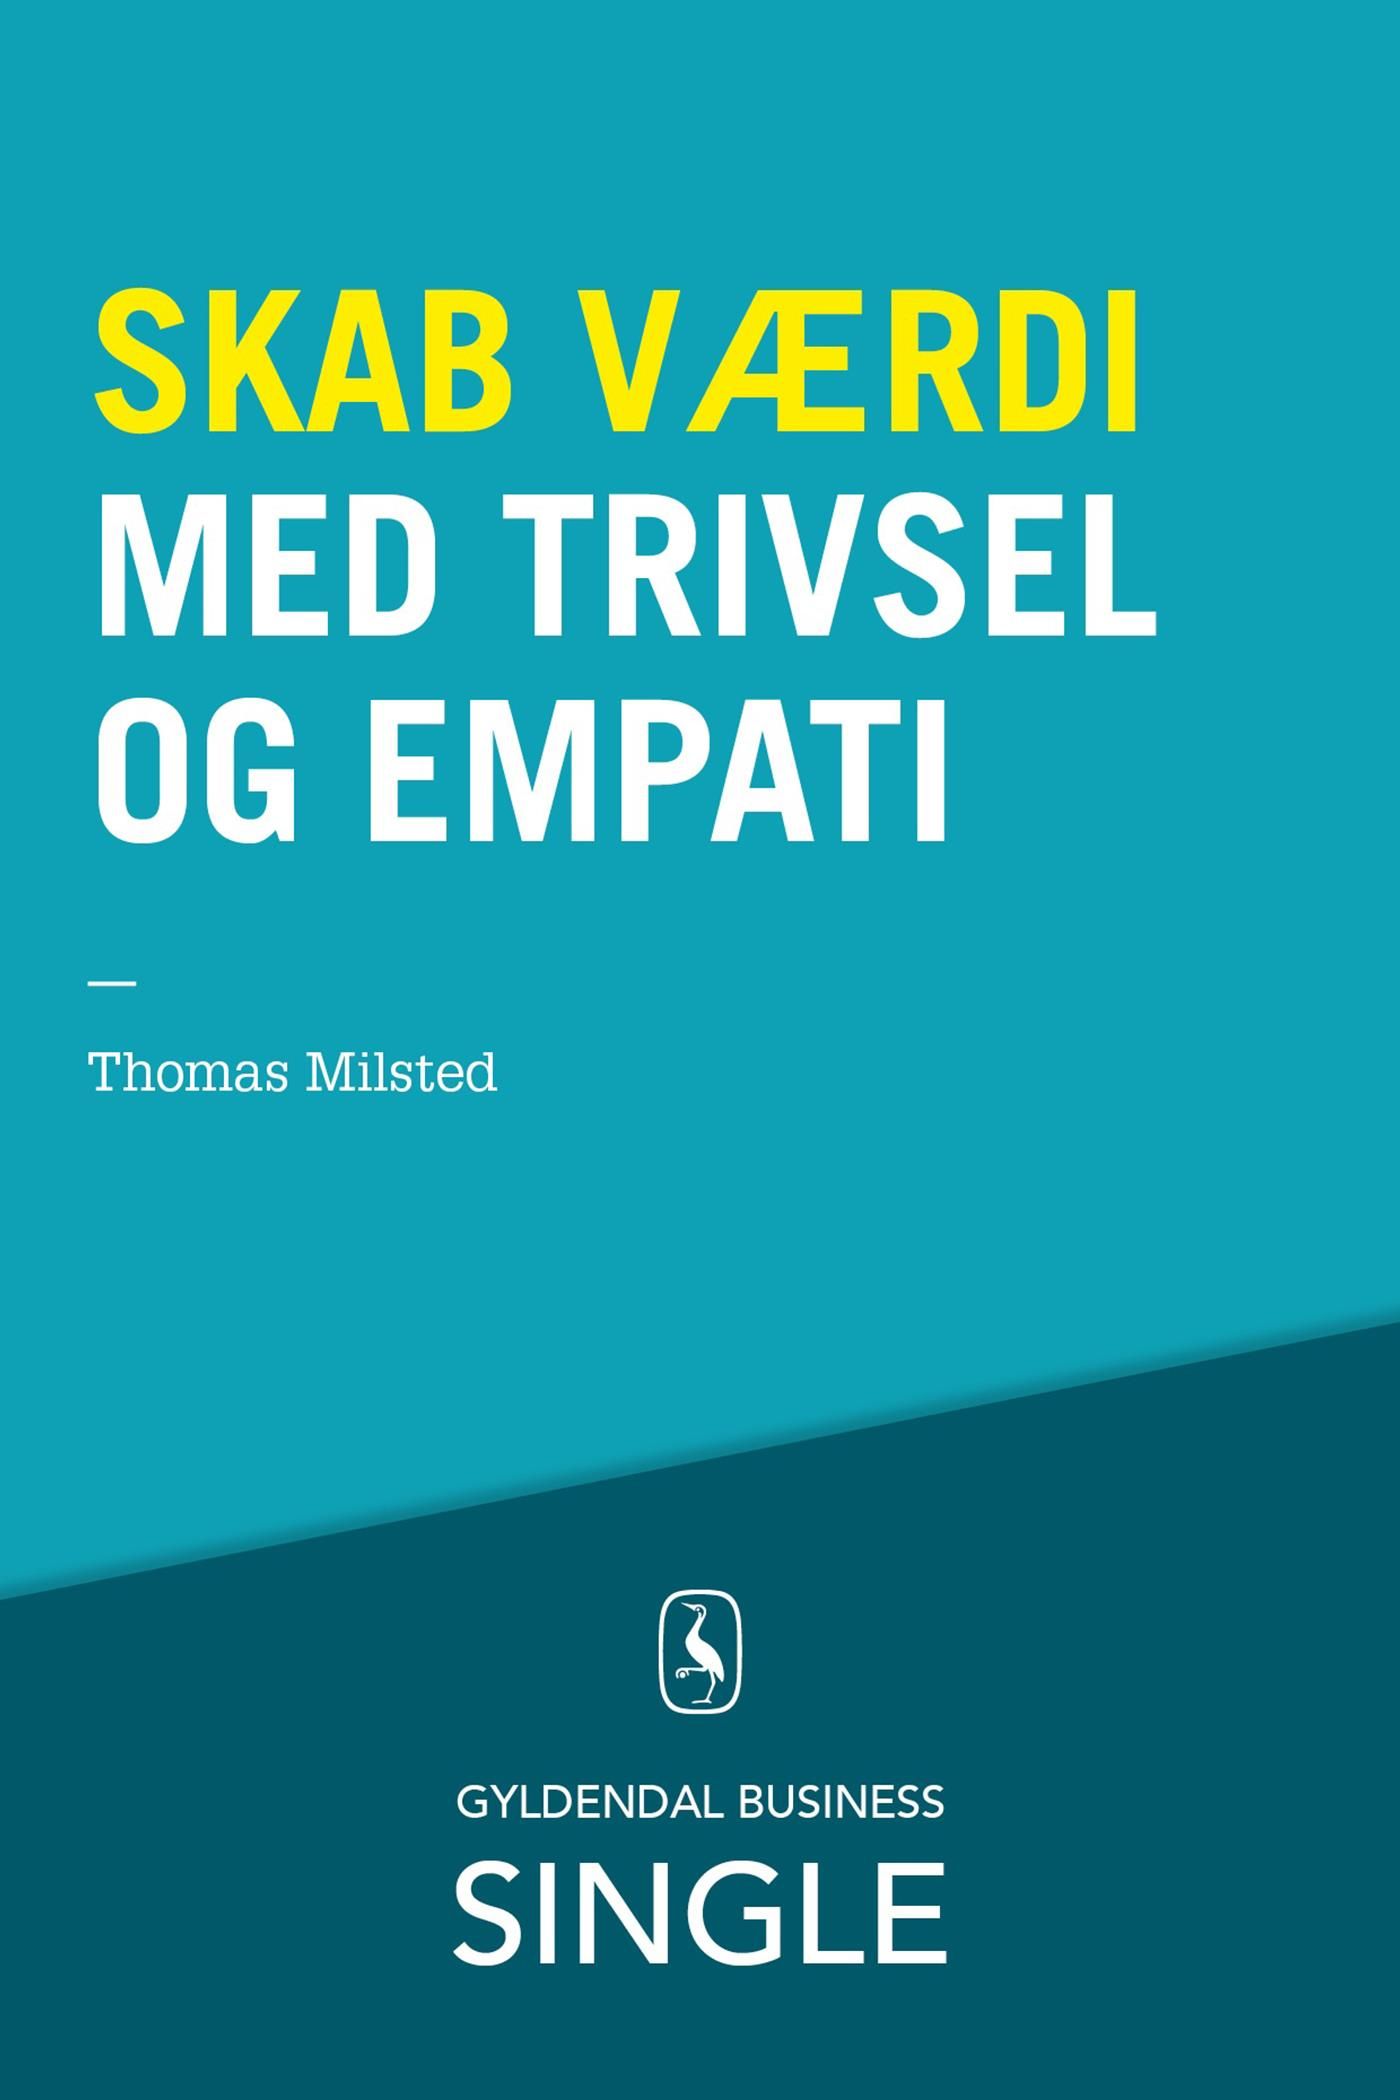 Skab værdi med trivsel og empati, e-bok av Thomas Milsted